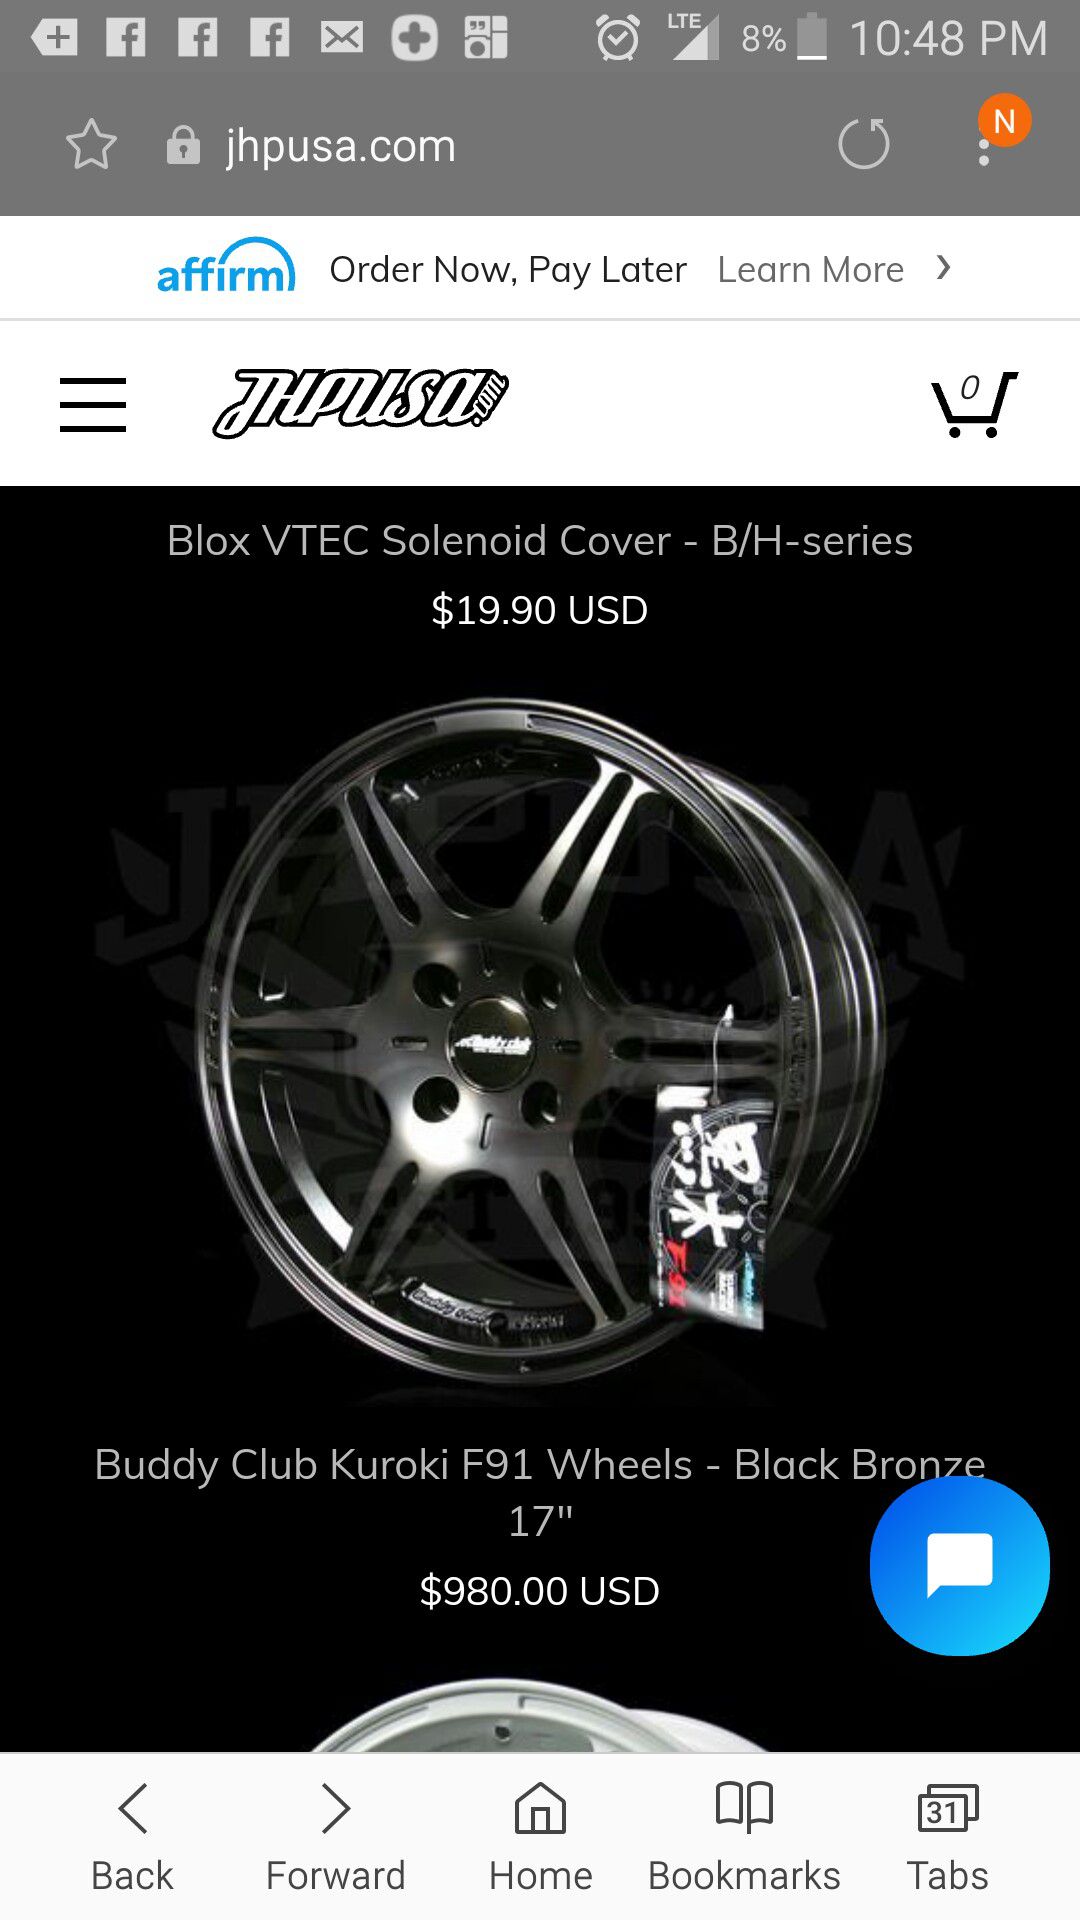 new) 17x7.5 42 offsets 4x100 Buddy Club wheels F91 KUROKI SPEC 